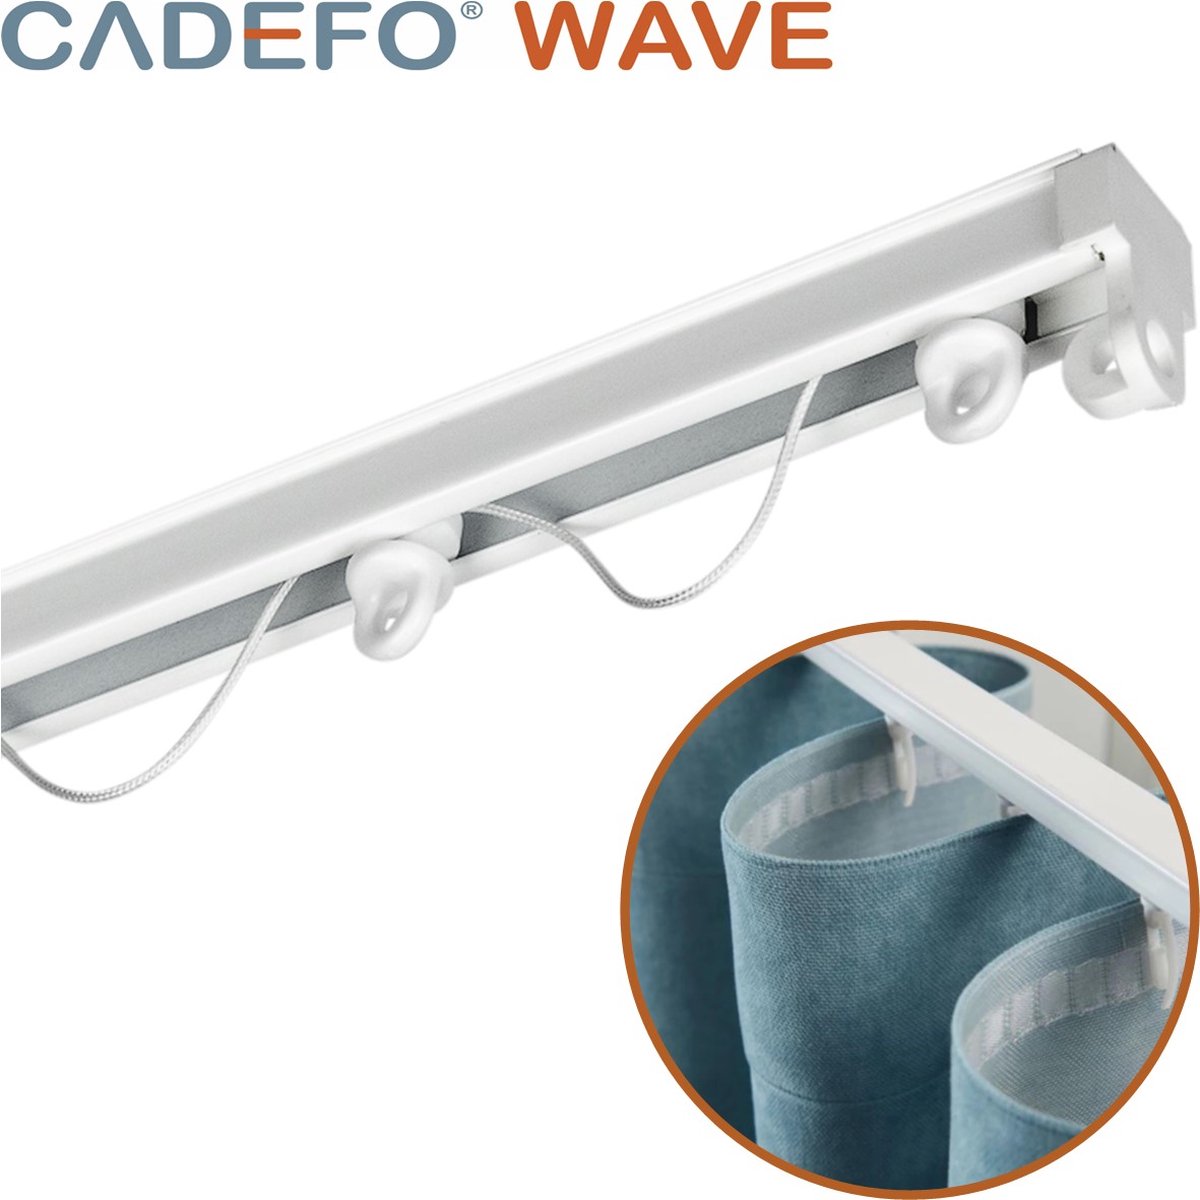 CADEFO WAVE (551 - 600 cm) Gordijnrails - Compleet op maat! - UIT 1 STUK - Leverbaar tot 6 meter - Plafondbevestiging - Lengte 572 cm